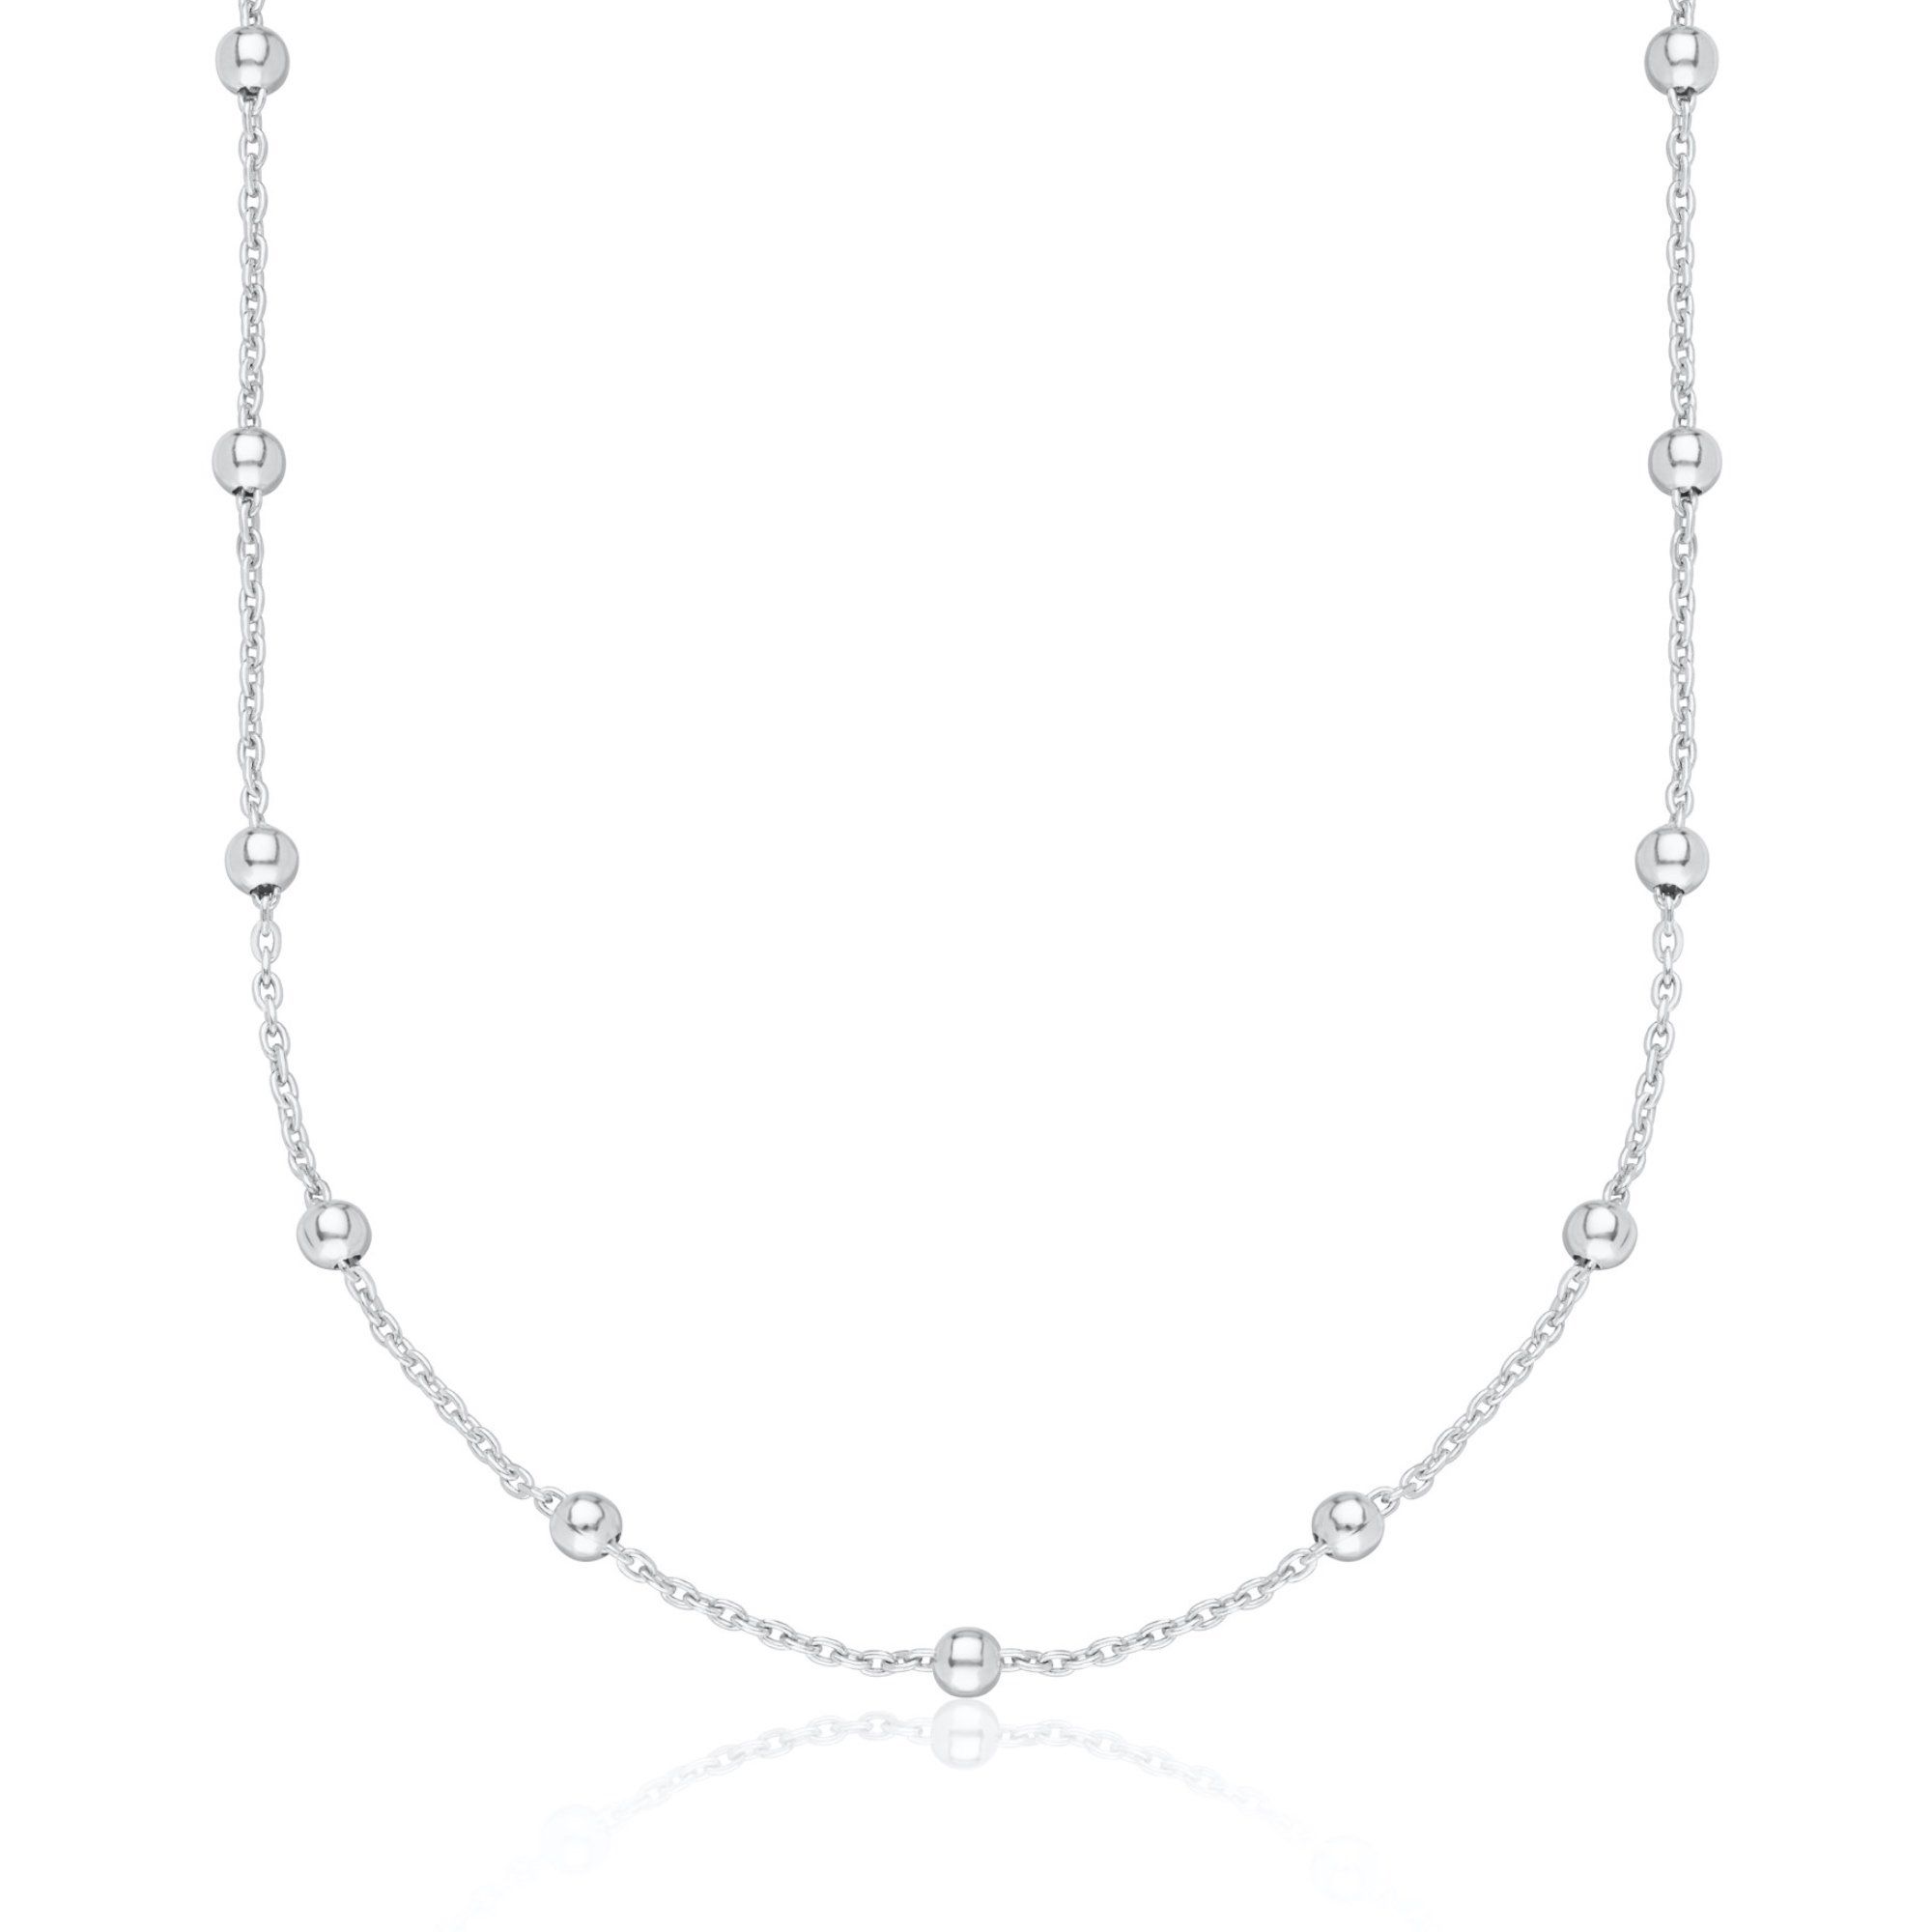 Satellite Chain Necklace Silver Chain 40-45cm  by Scream Pretty